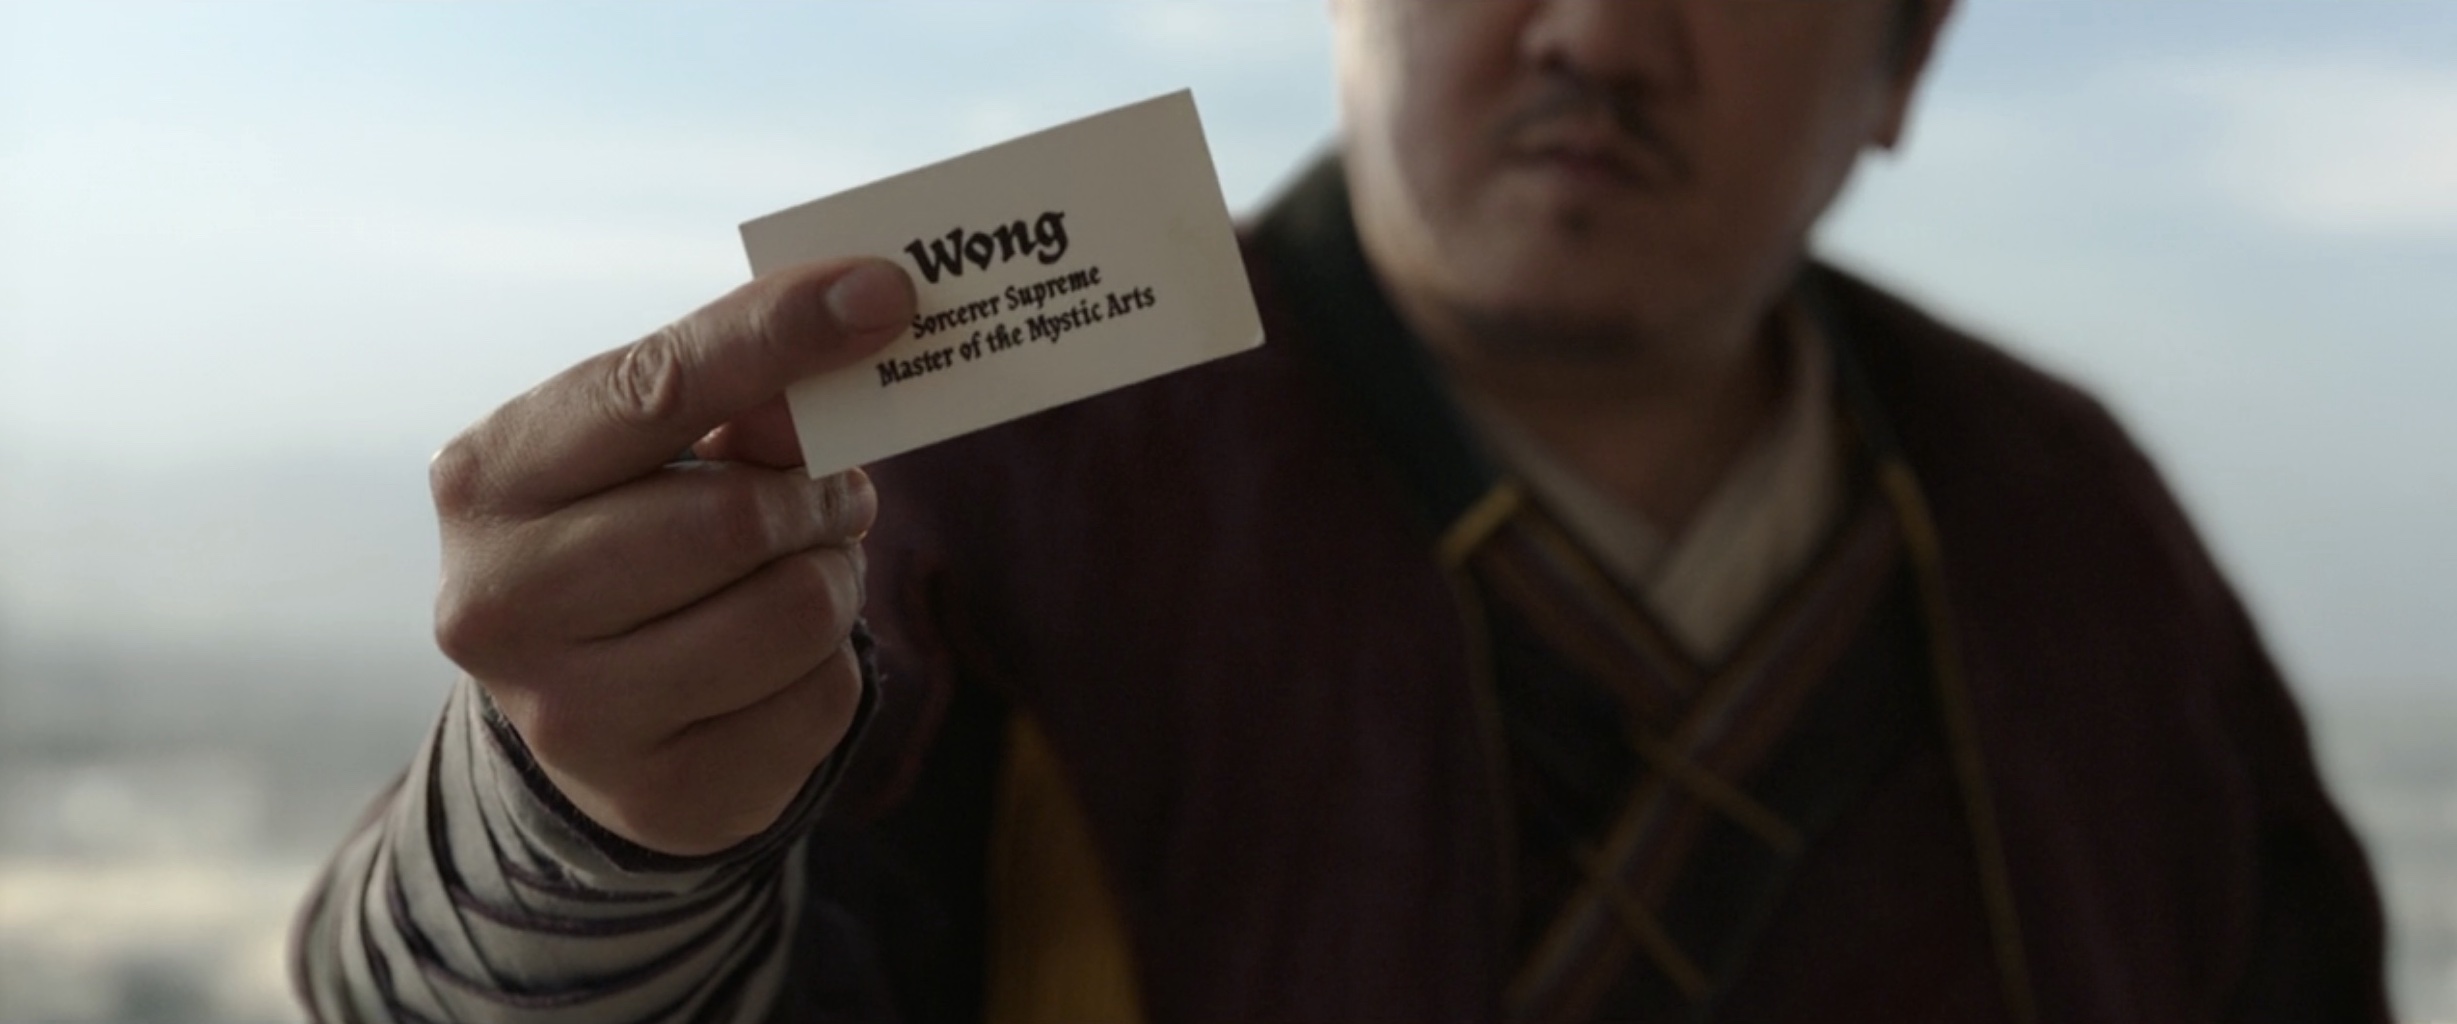 Wong Business Card